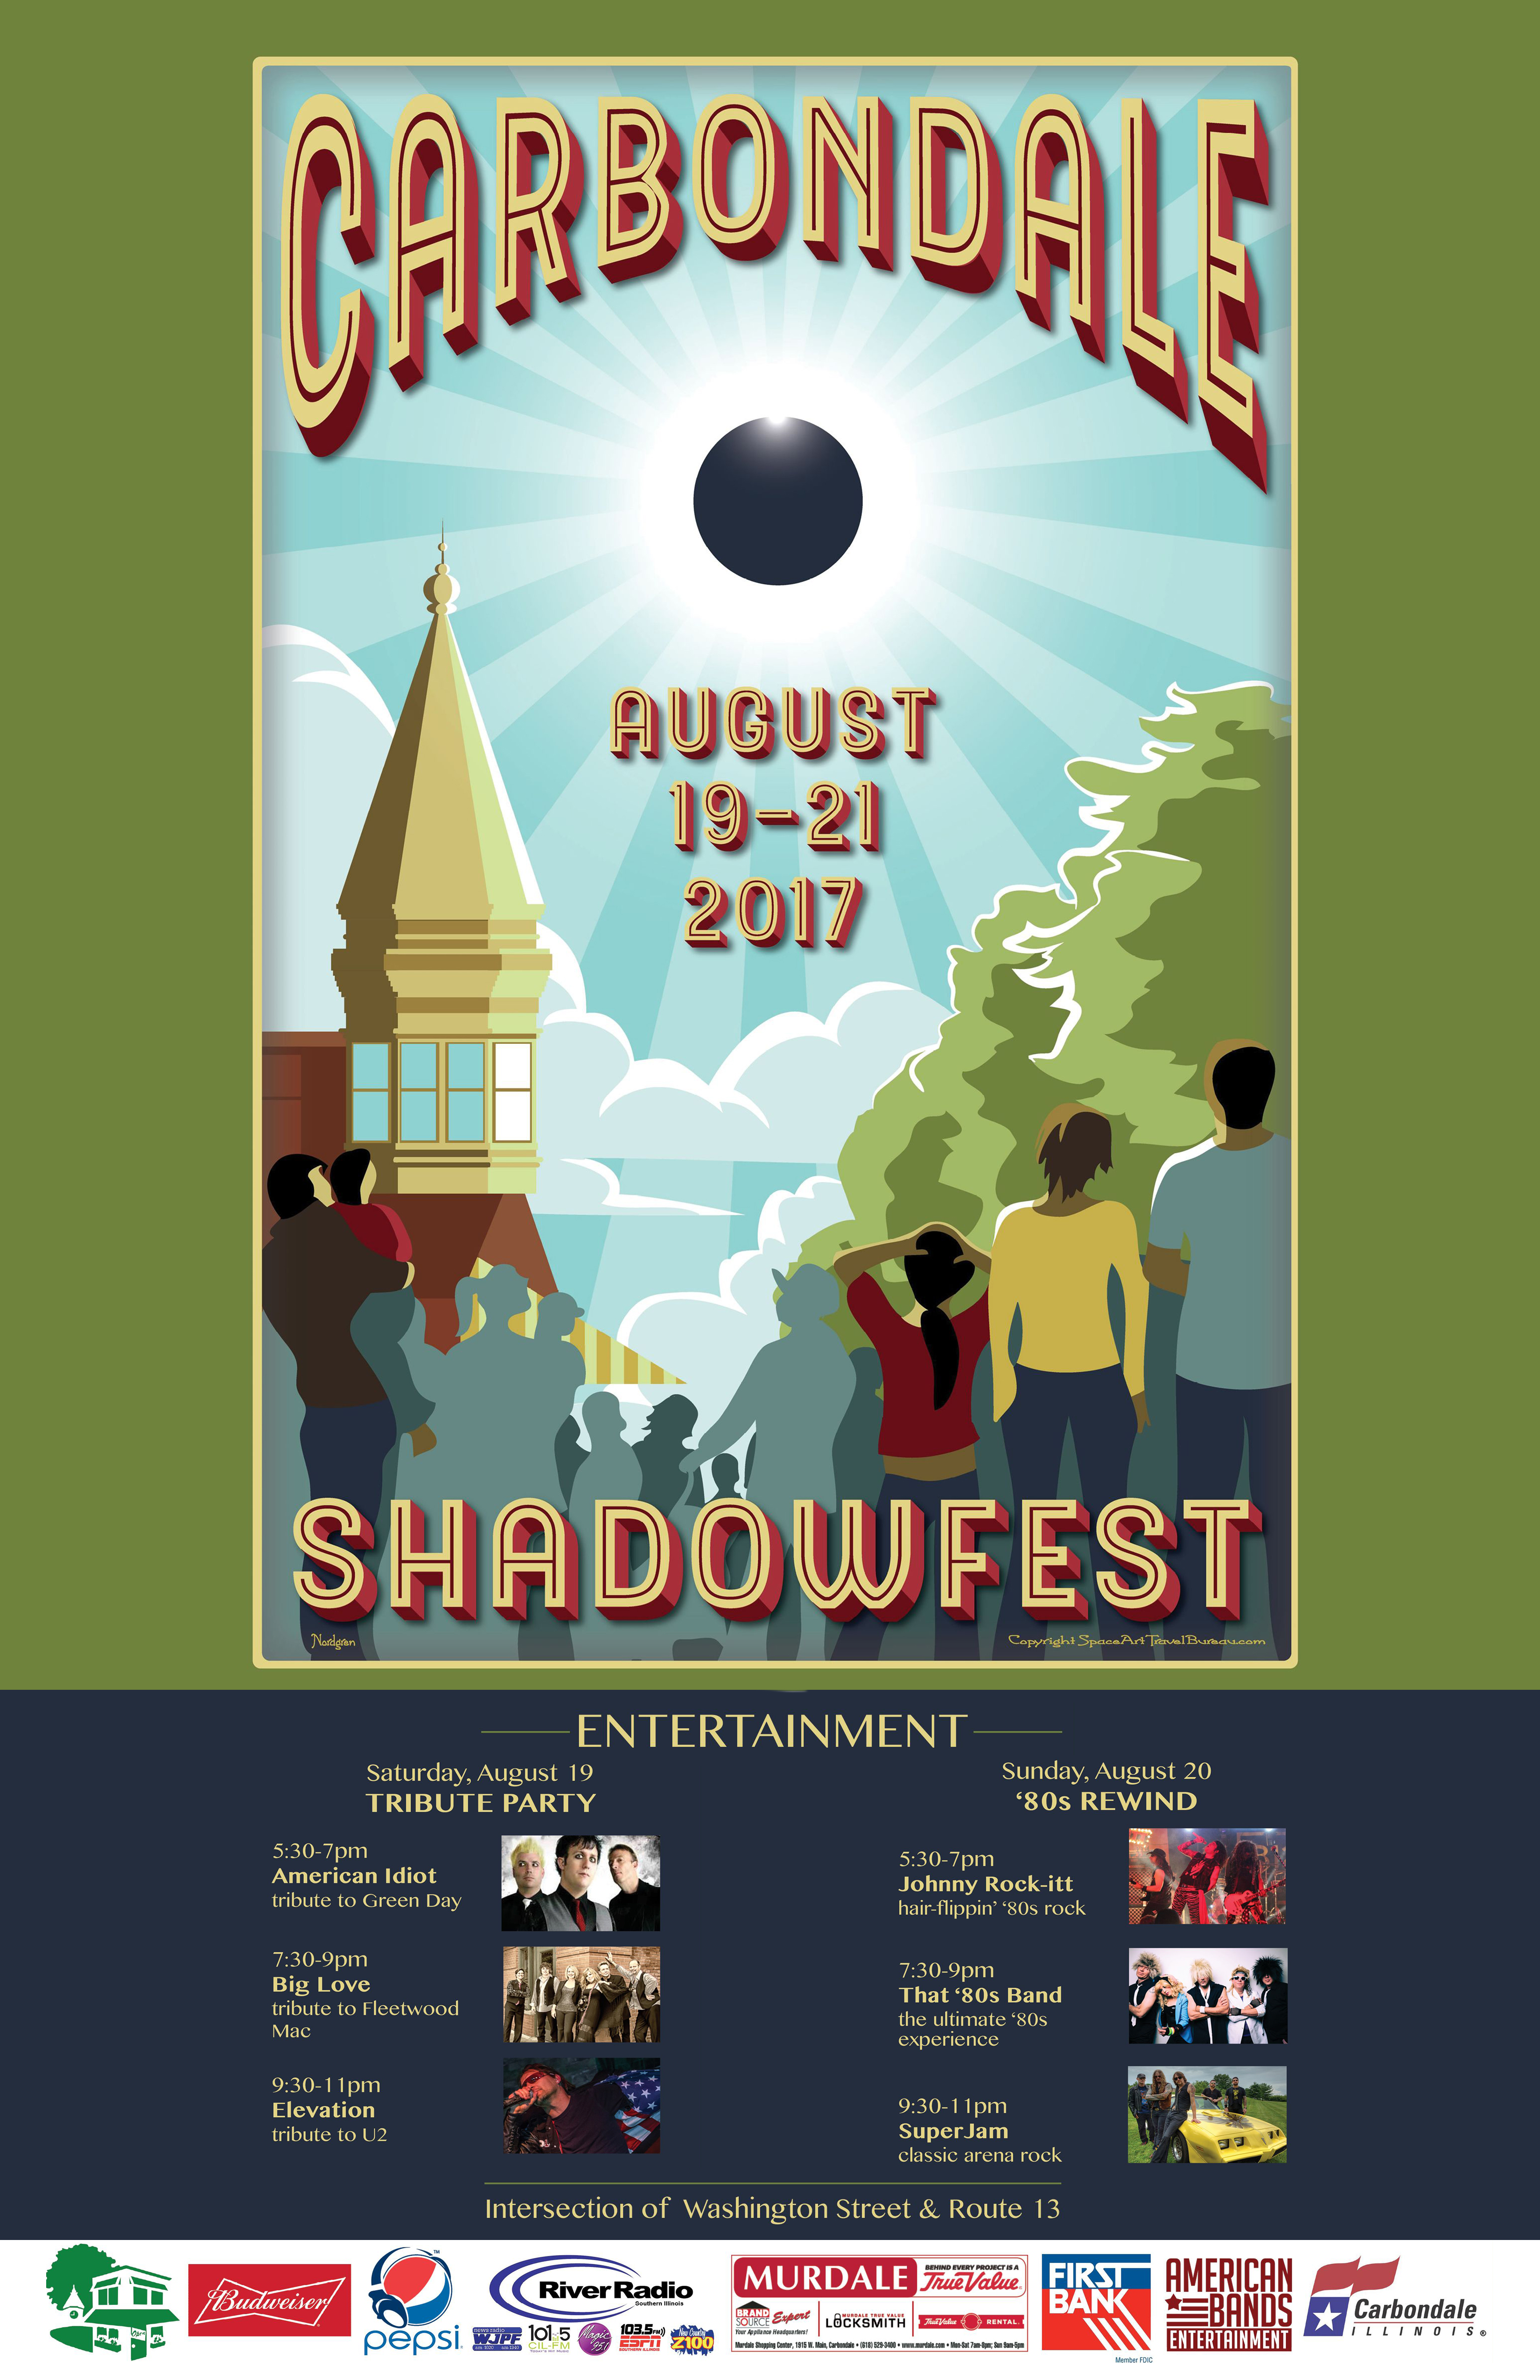 Shadows Fest